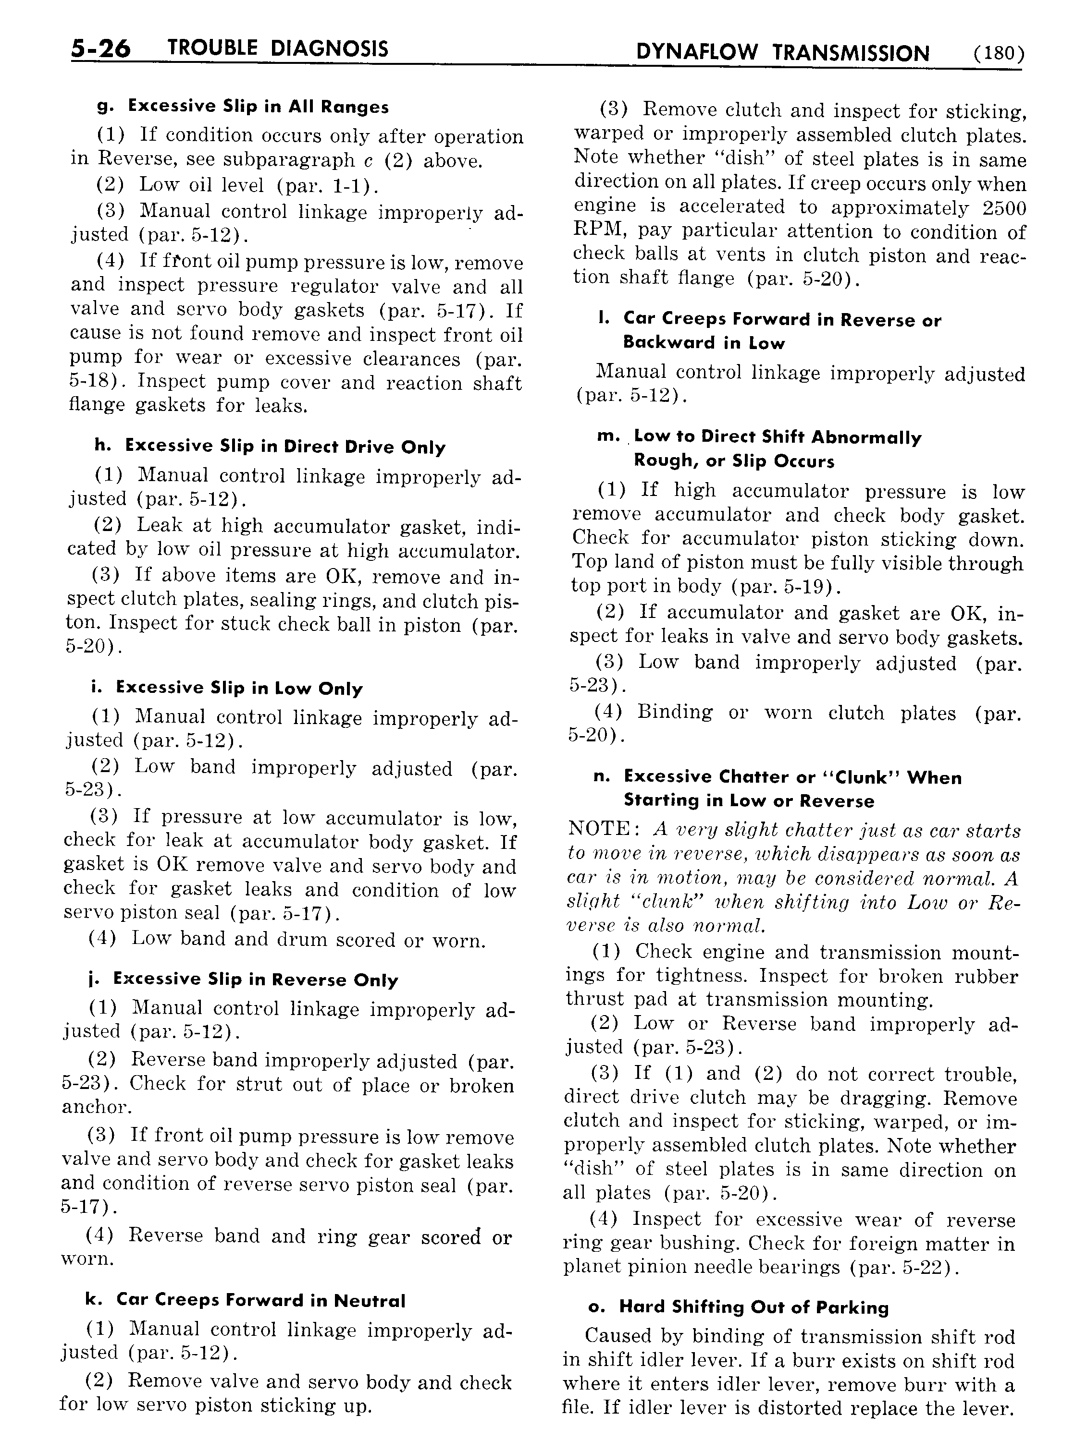 n_06 1954 Buick Shop Manual - Dynaflow-026-026.jpg